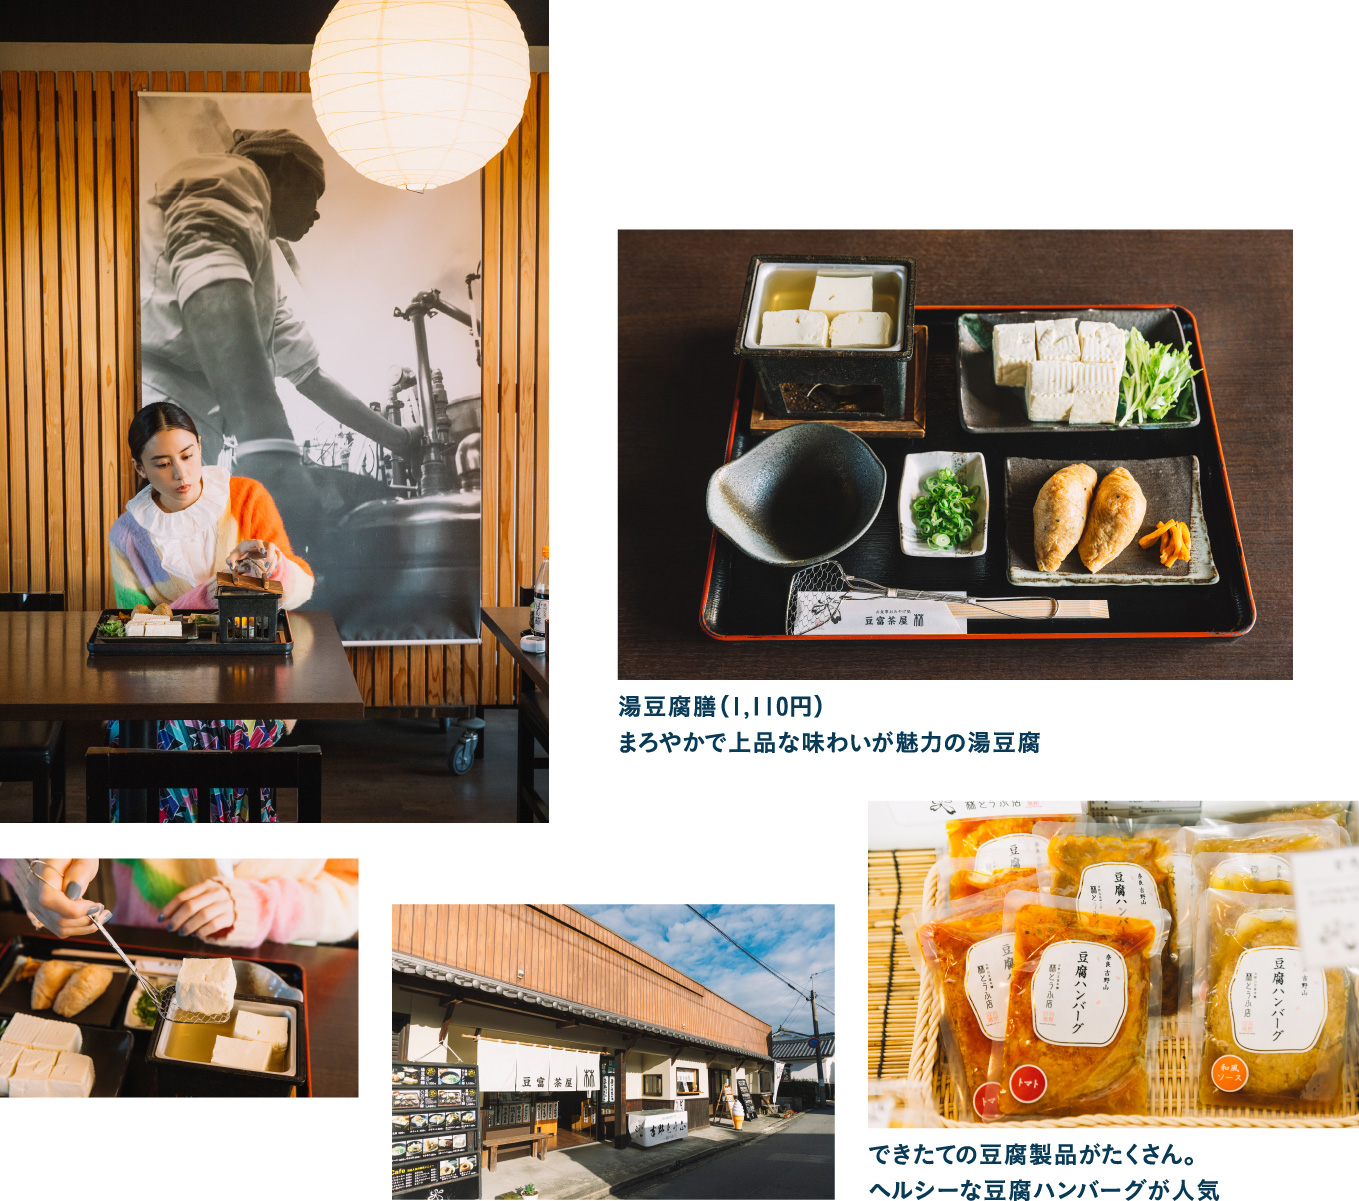 吉野山の水と伝統製法で作り上げる豆富茶屋 林 中店で湯豆腐ランチ